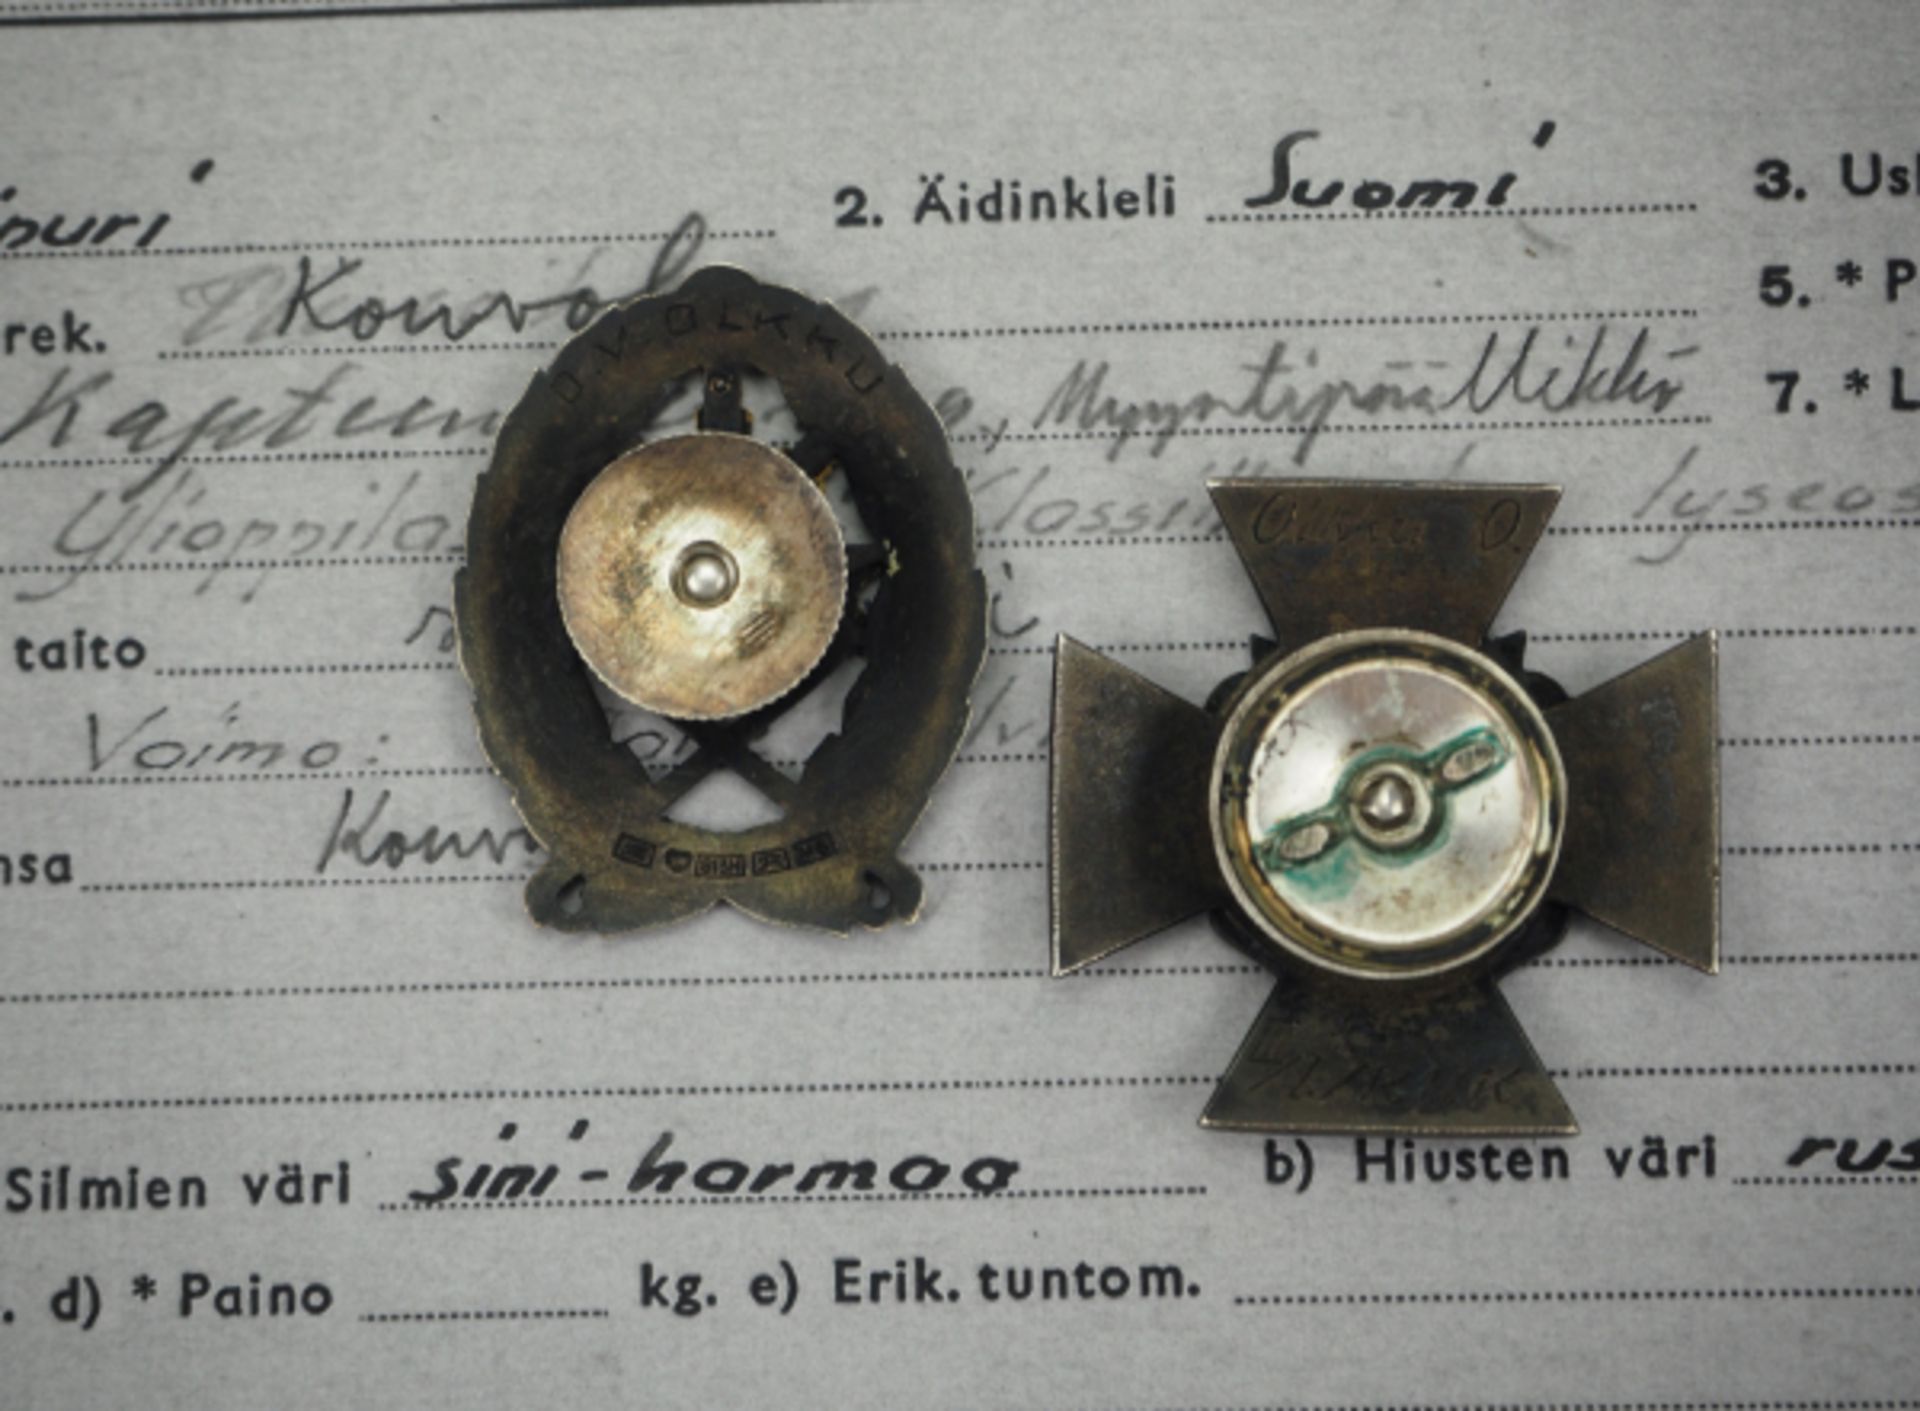 Finnland: Nachlass eines Offiziers - RUK 37.1.) Kadetten Offiziers Schuhl Abzeichen, 1. Typ, mit - Bild 2 aus 3